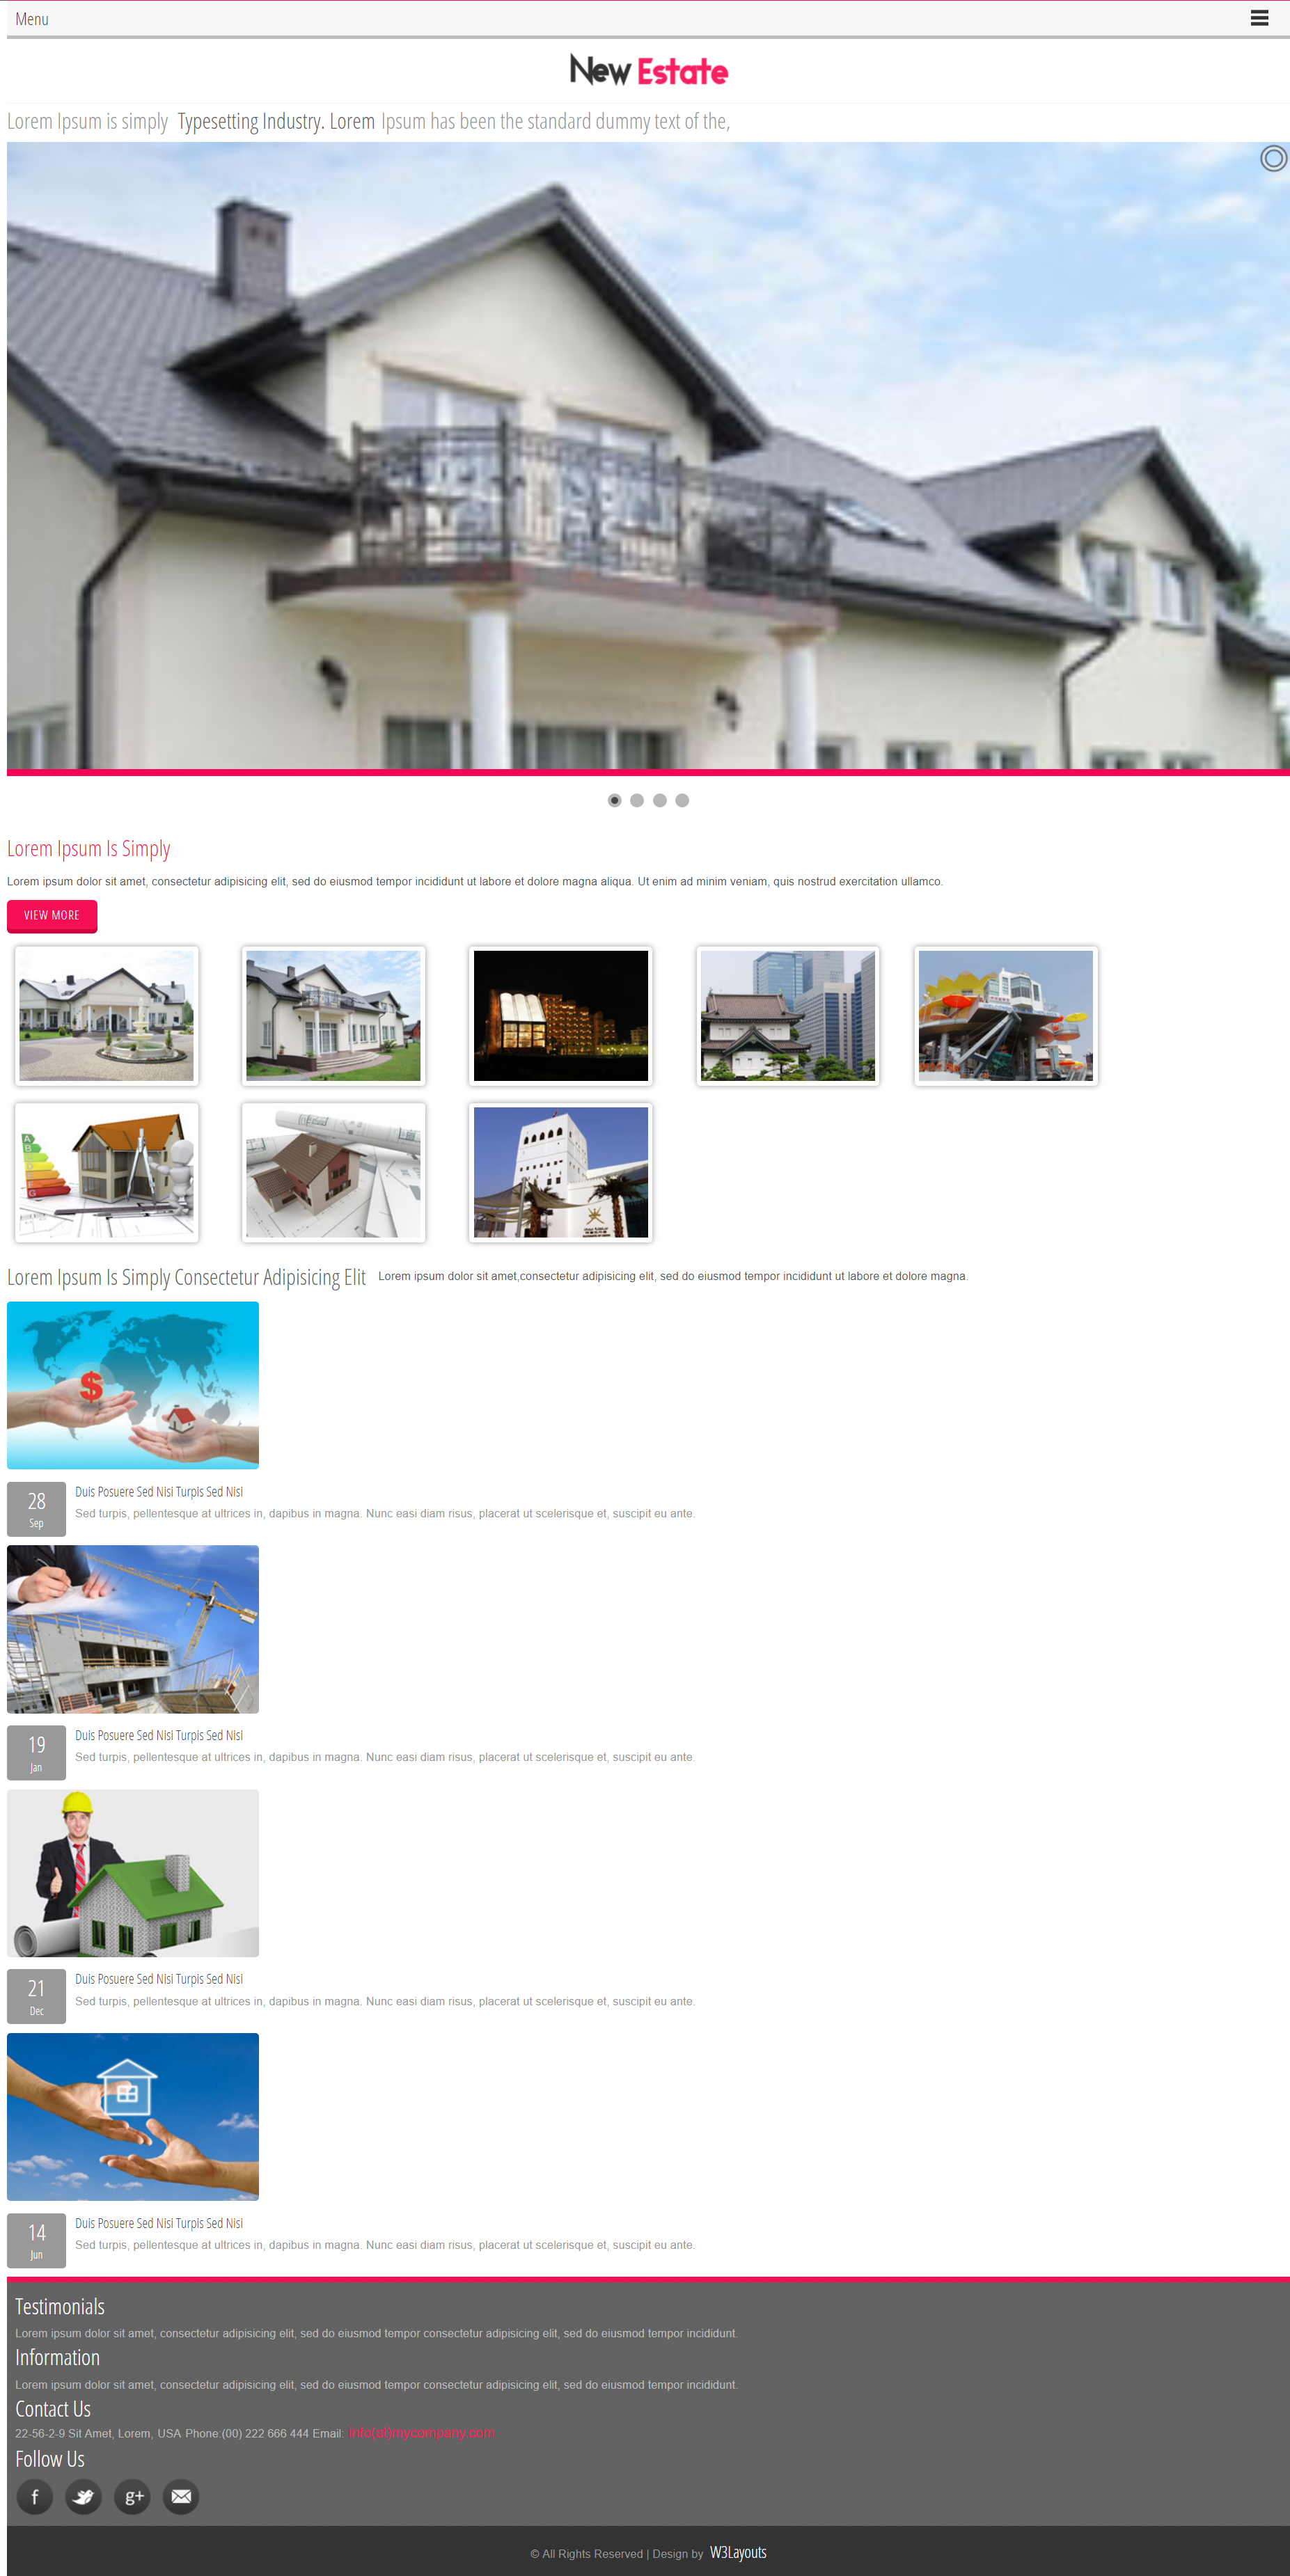 红色简洁风格响应式新房产建筑网页模板